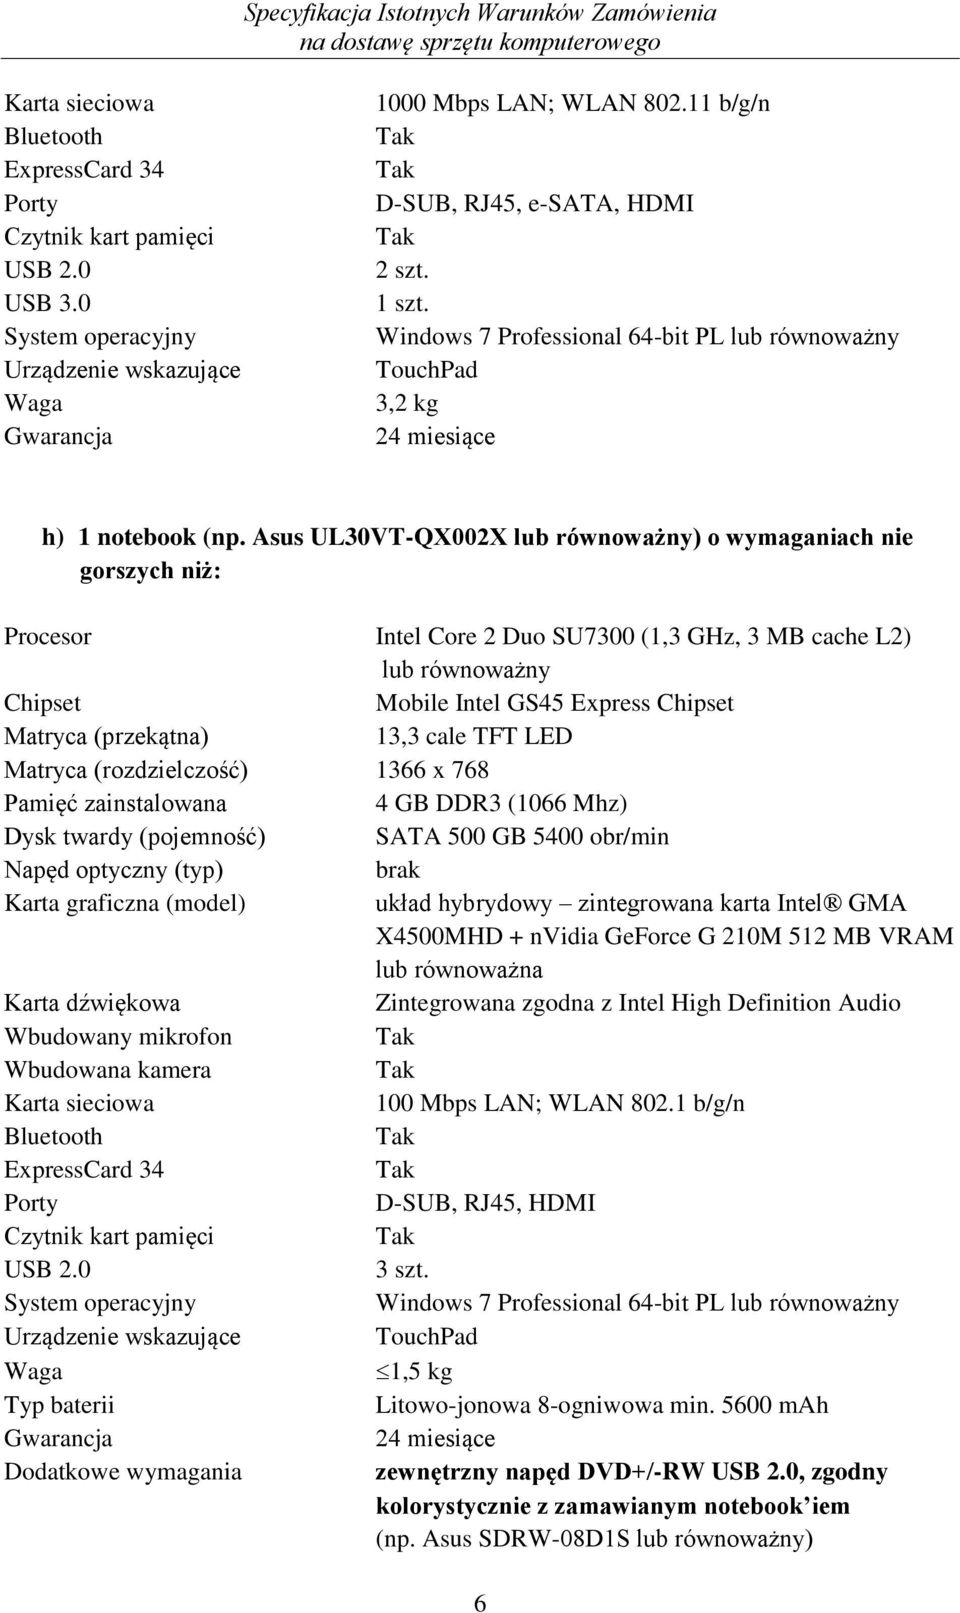 Asus UL30VT-QX002X lub równoważny) o wymaganiach nie gorszych niż: Procesor Intel Core 2 Duo SU7300 (1,3 GHz, 3 MB cache L2) lub równoważny Chipset Mobile Intel GS45 Express Chipset Matryca